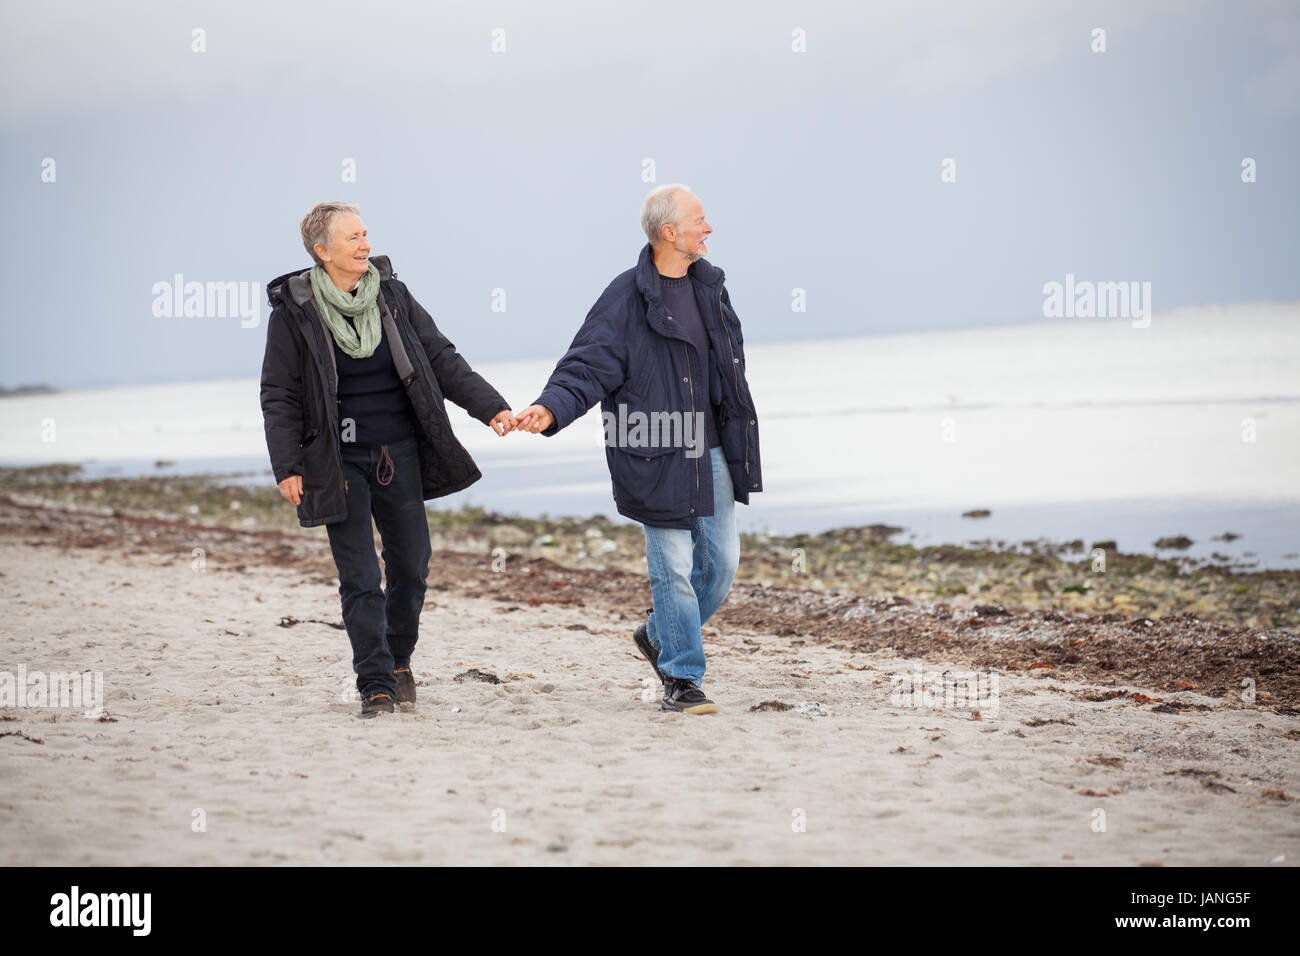 Älteres glückliches paar Macht einen strand promenade im Herbst ostsee landschaft meer Banque D'Images